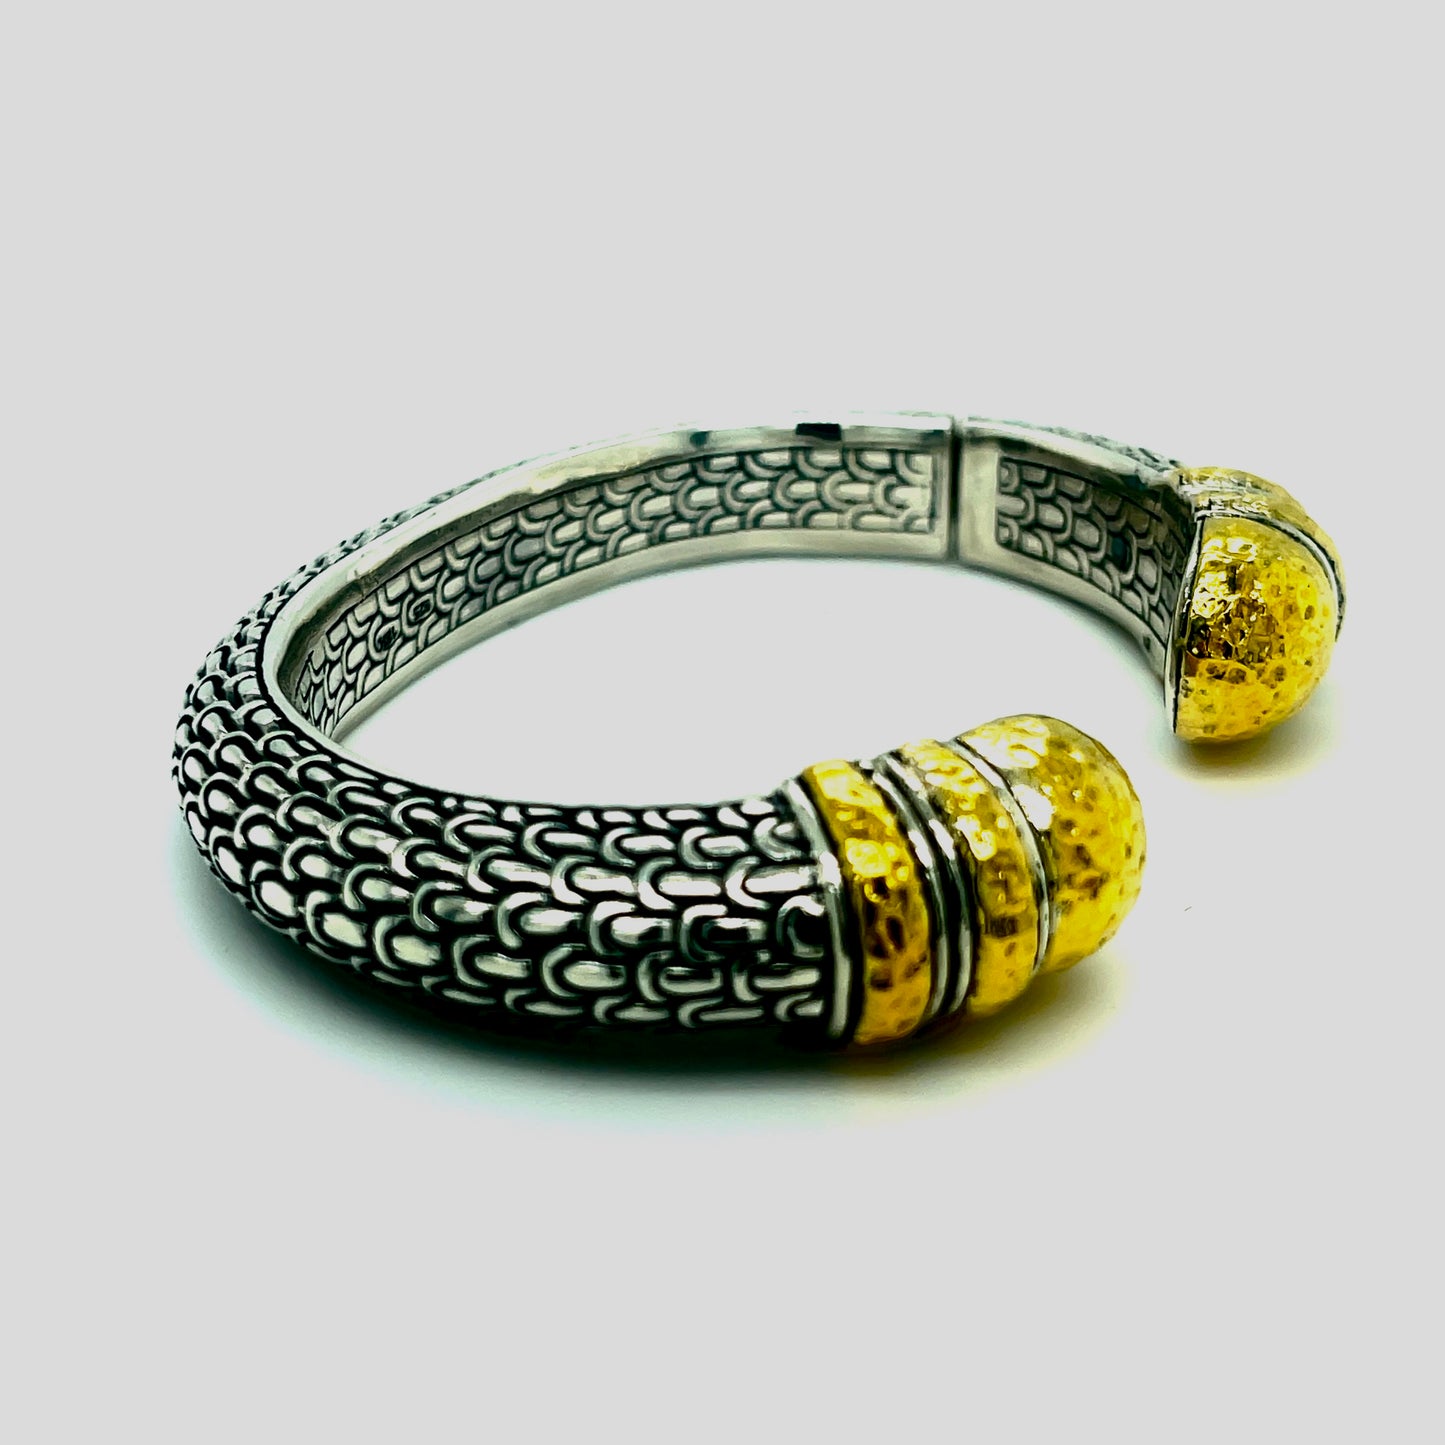 Silver and 18kt Gold bracelet